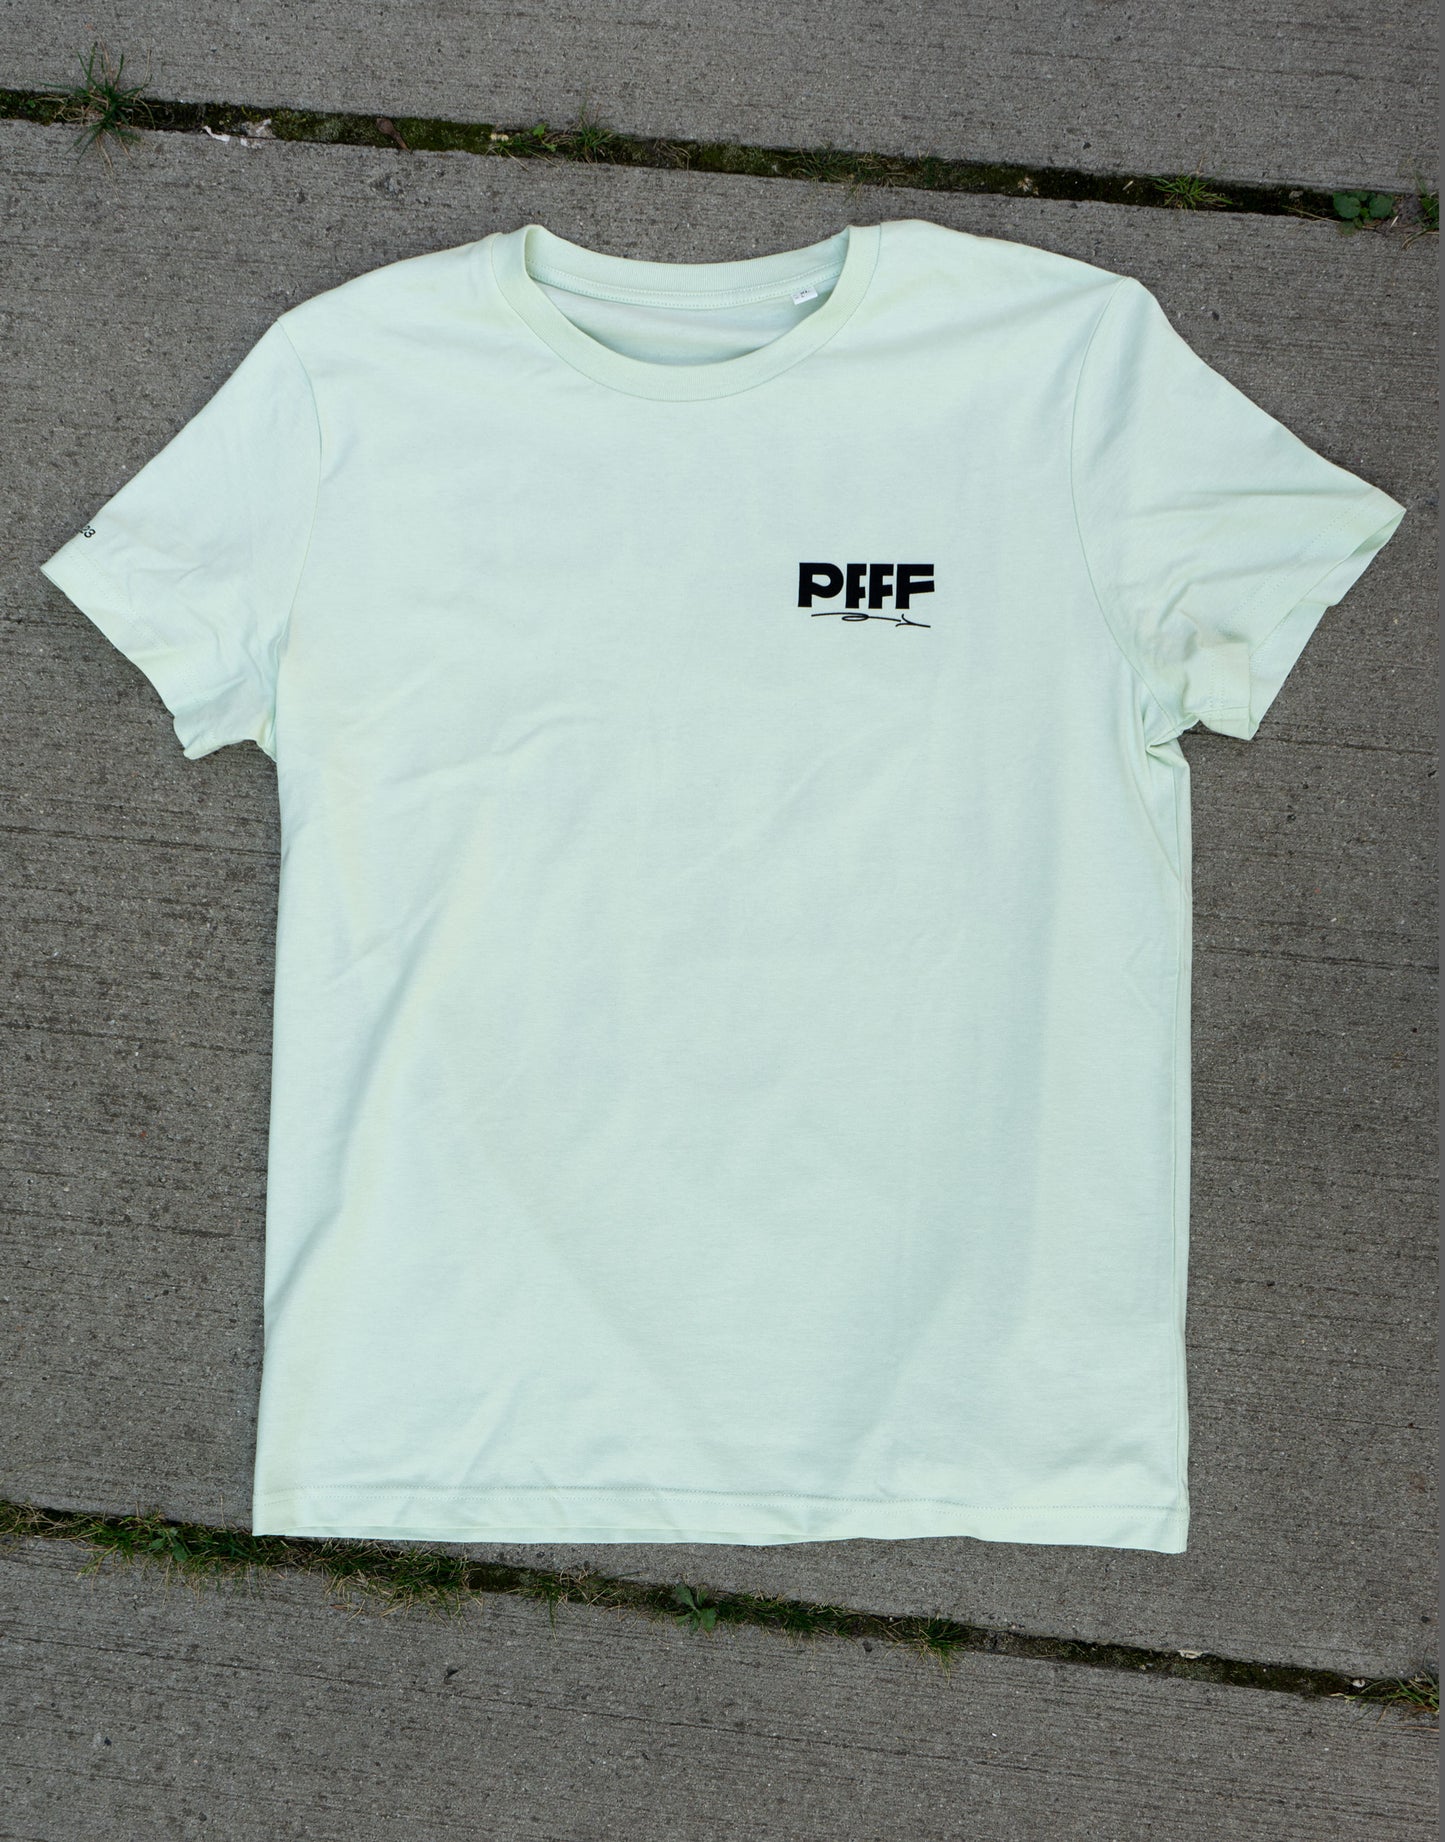 PFFFestival-Shirt — Kunst ist für alle da!